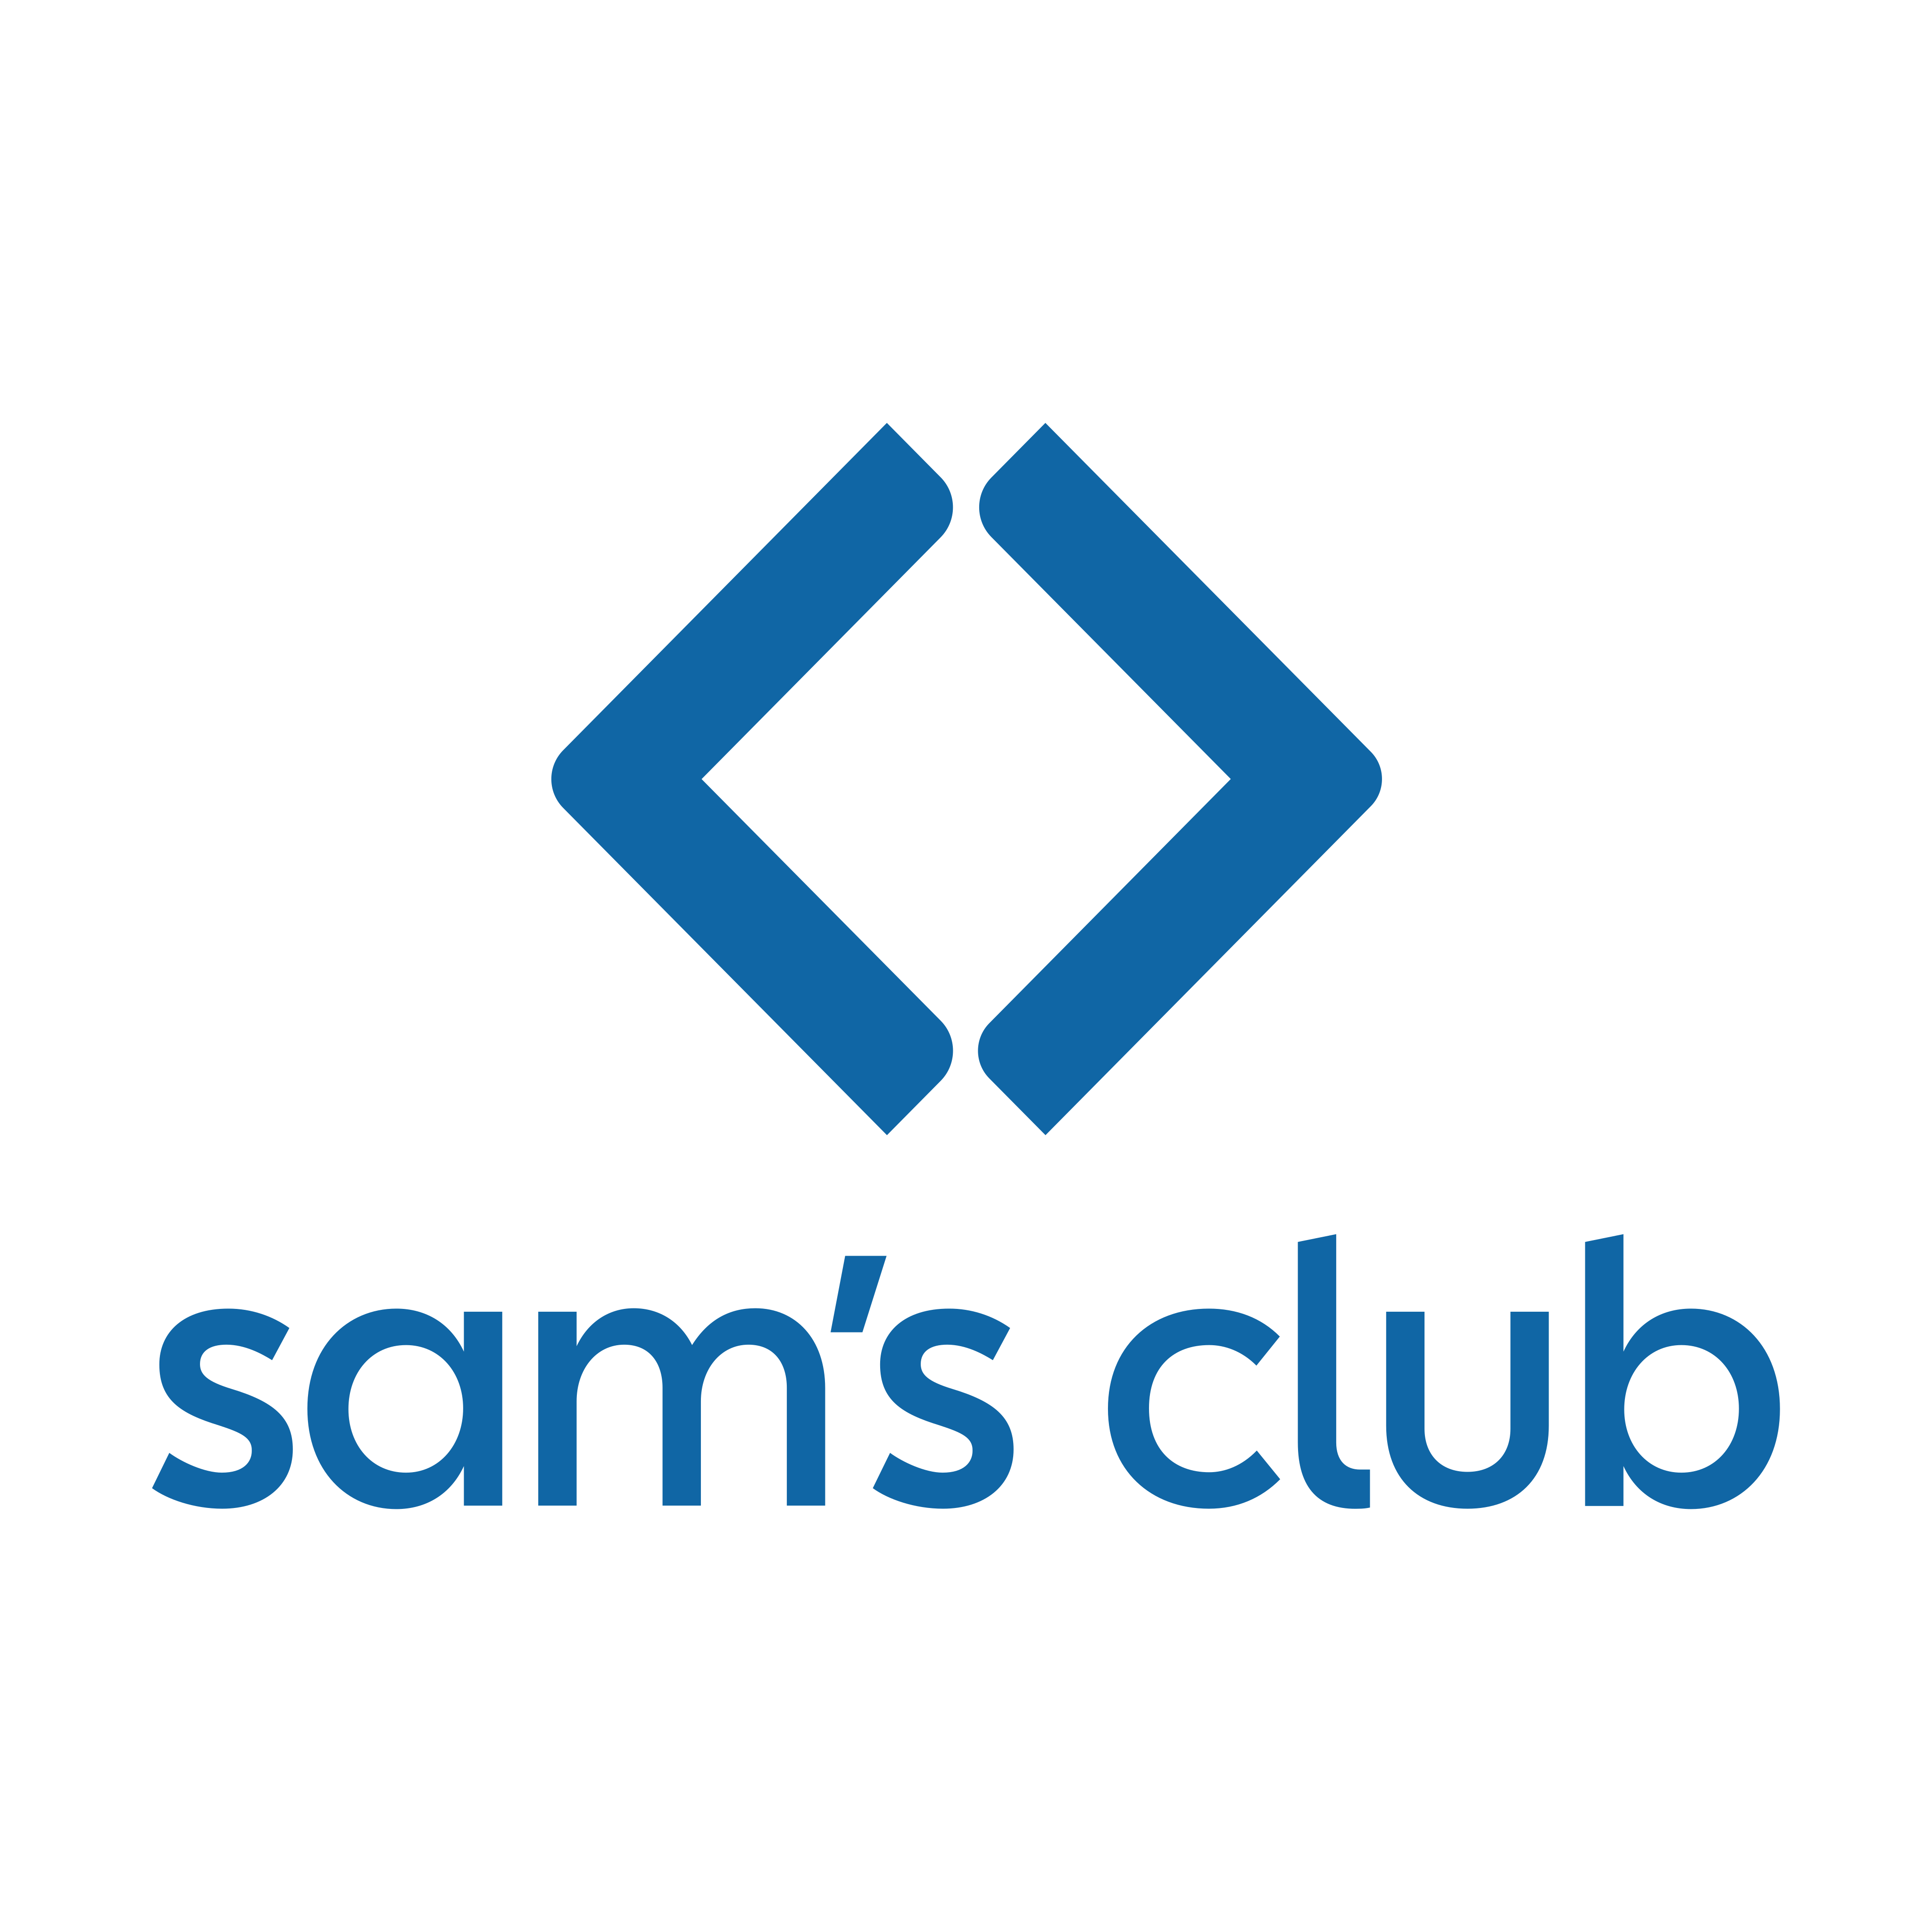 sams club logo 0 - Sam’s Club Logo